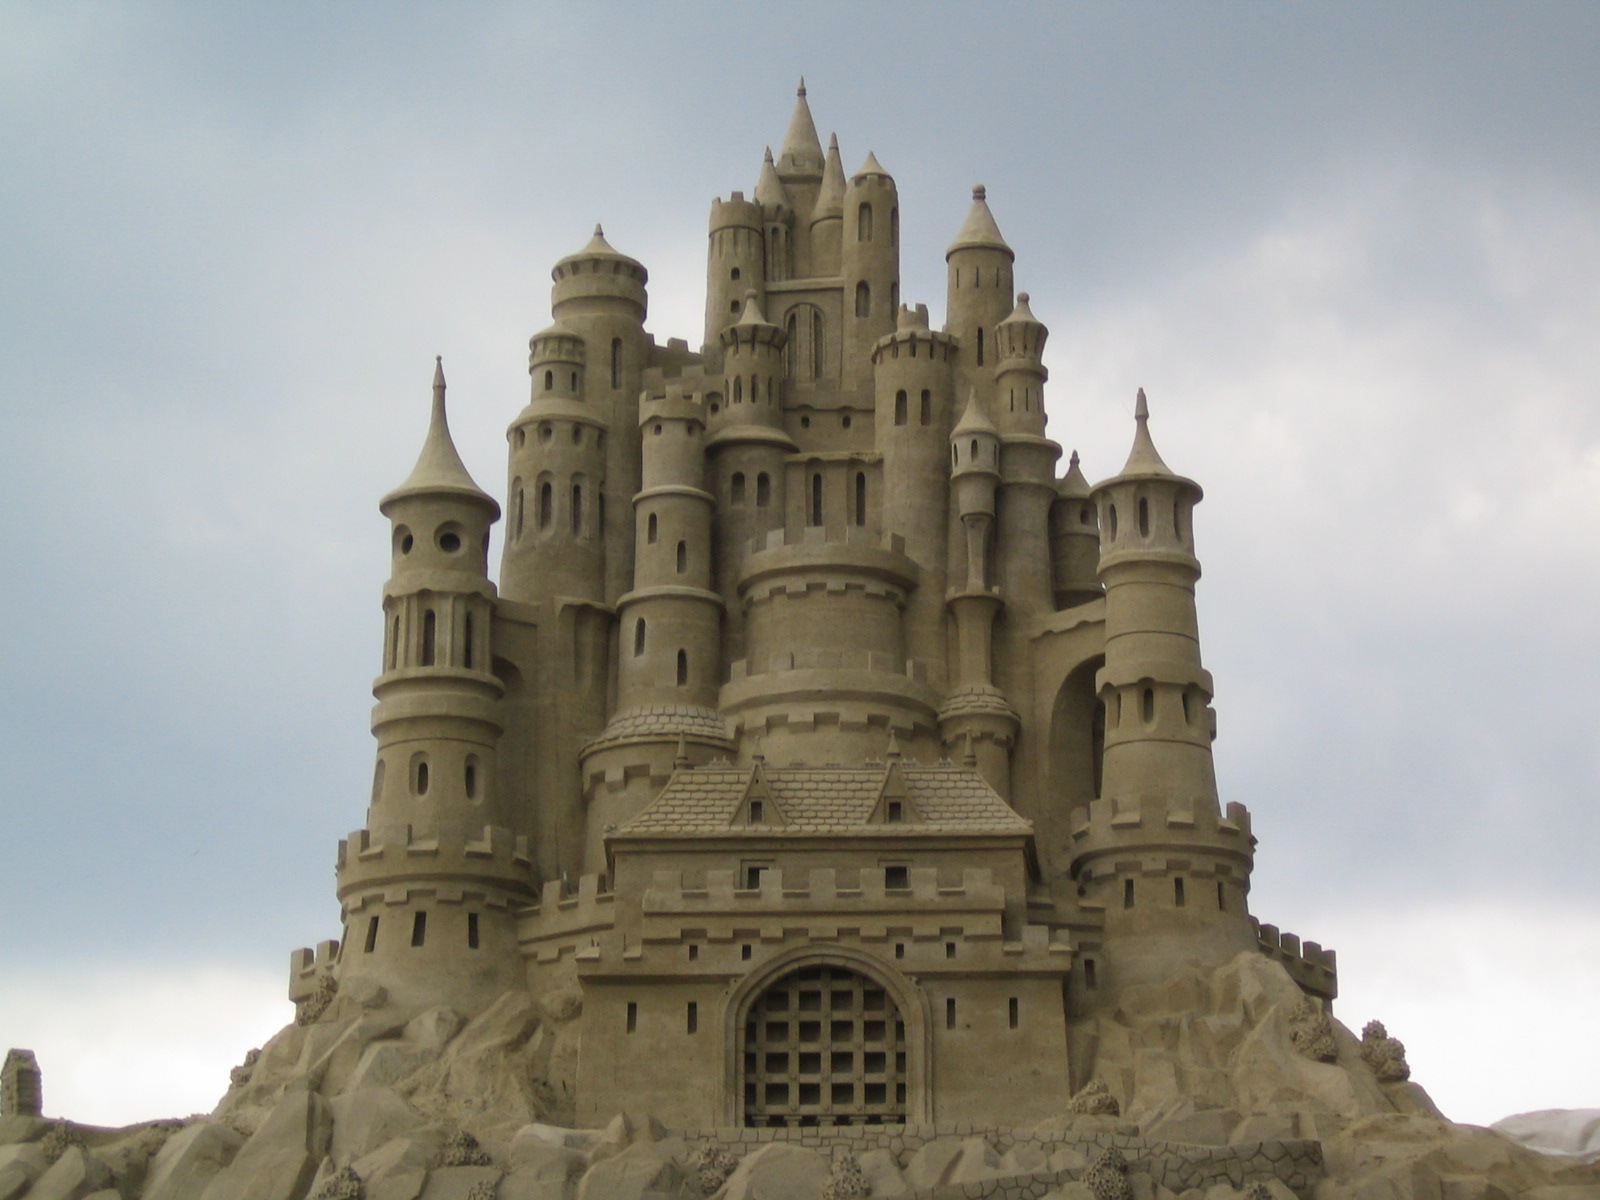 Amazing Sand Castles - Wonderful